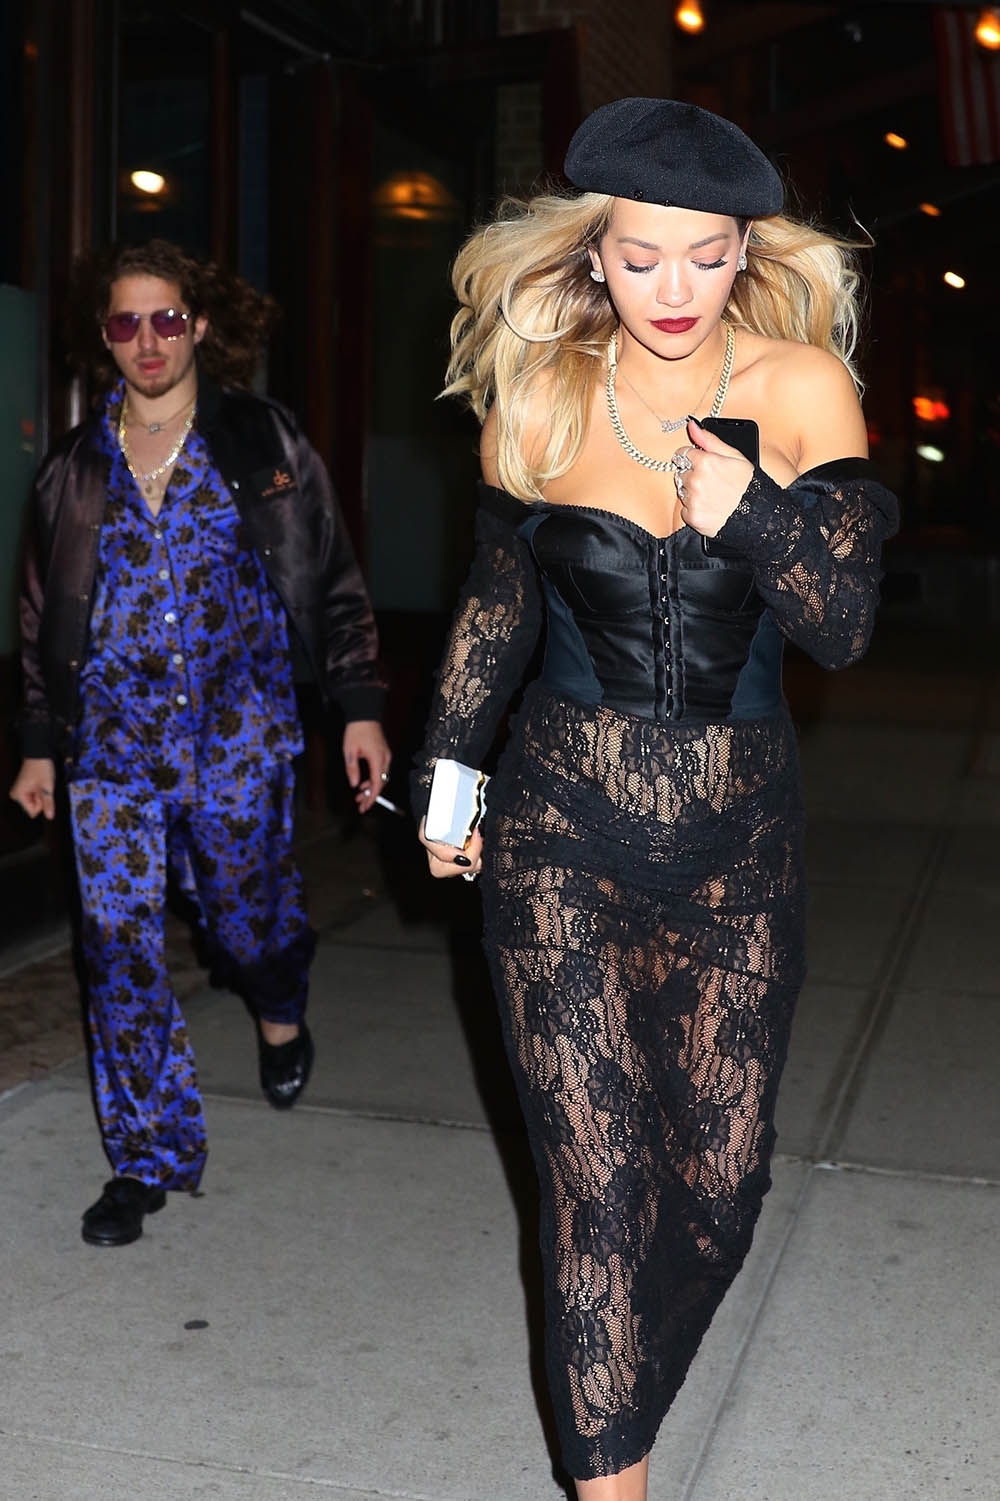 Rita Ora and boyfriend Andrew Watt wearing street pajamas